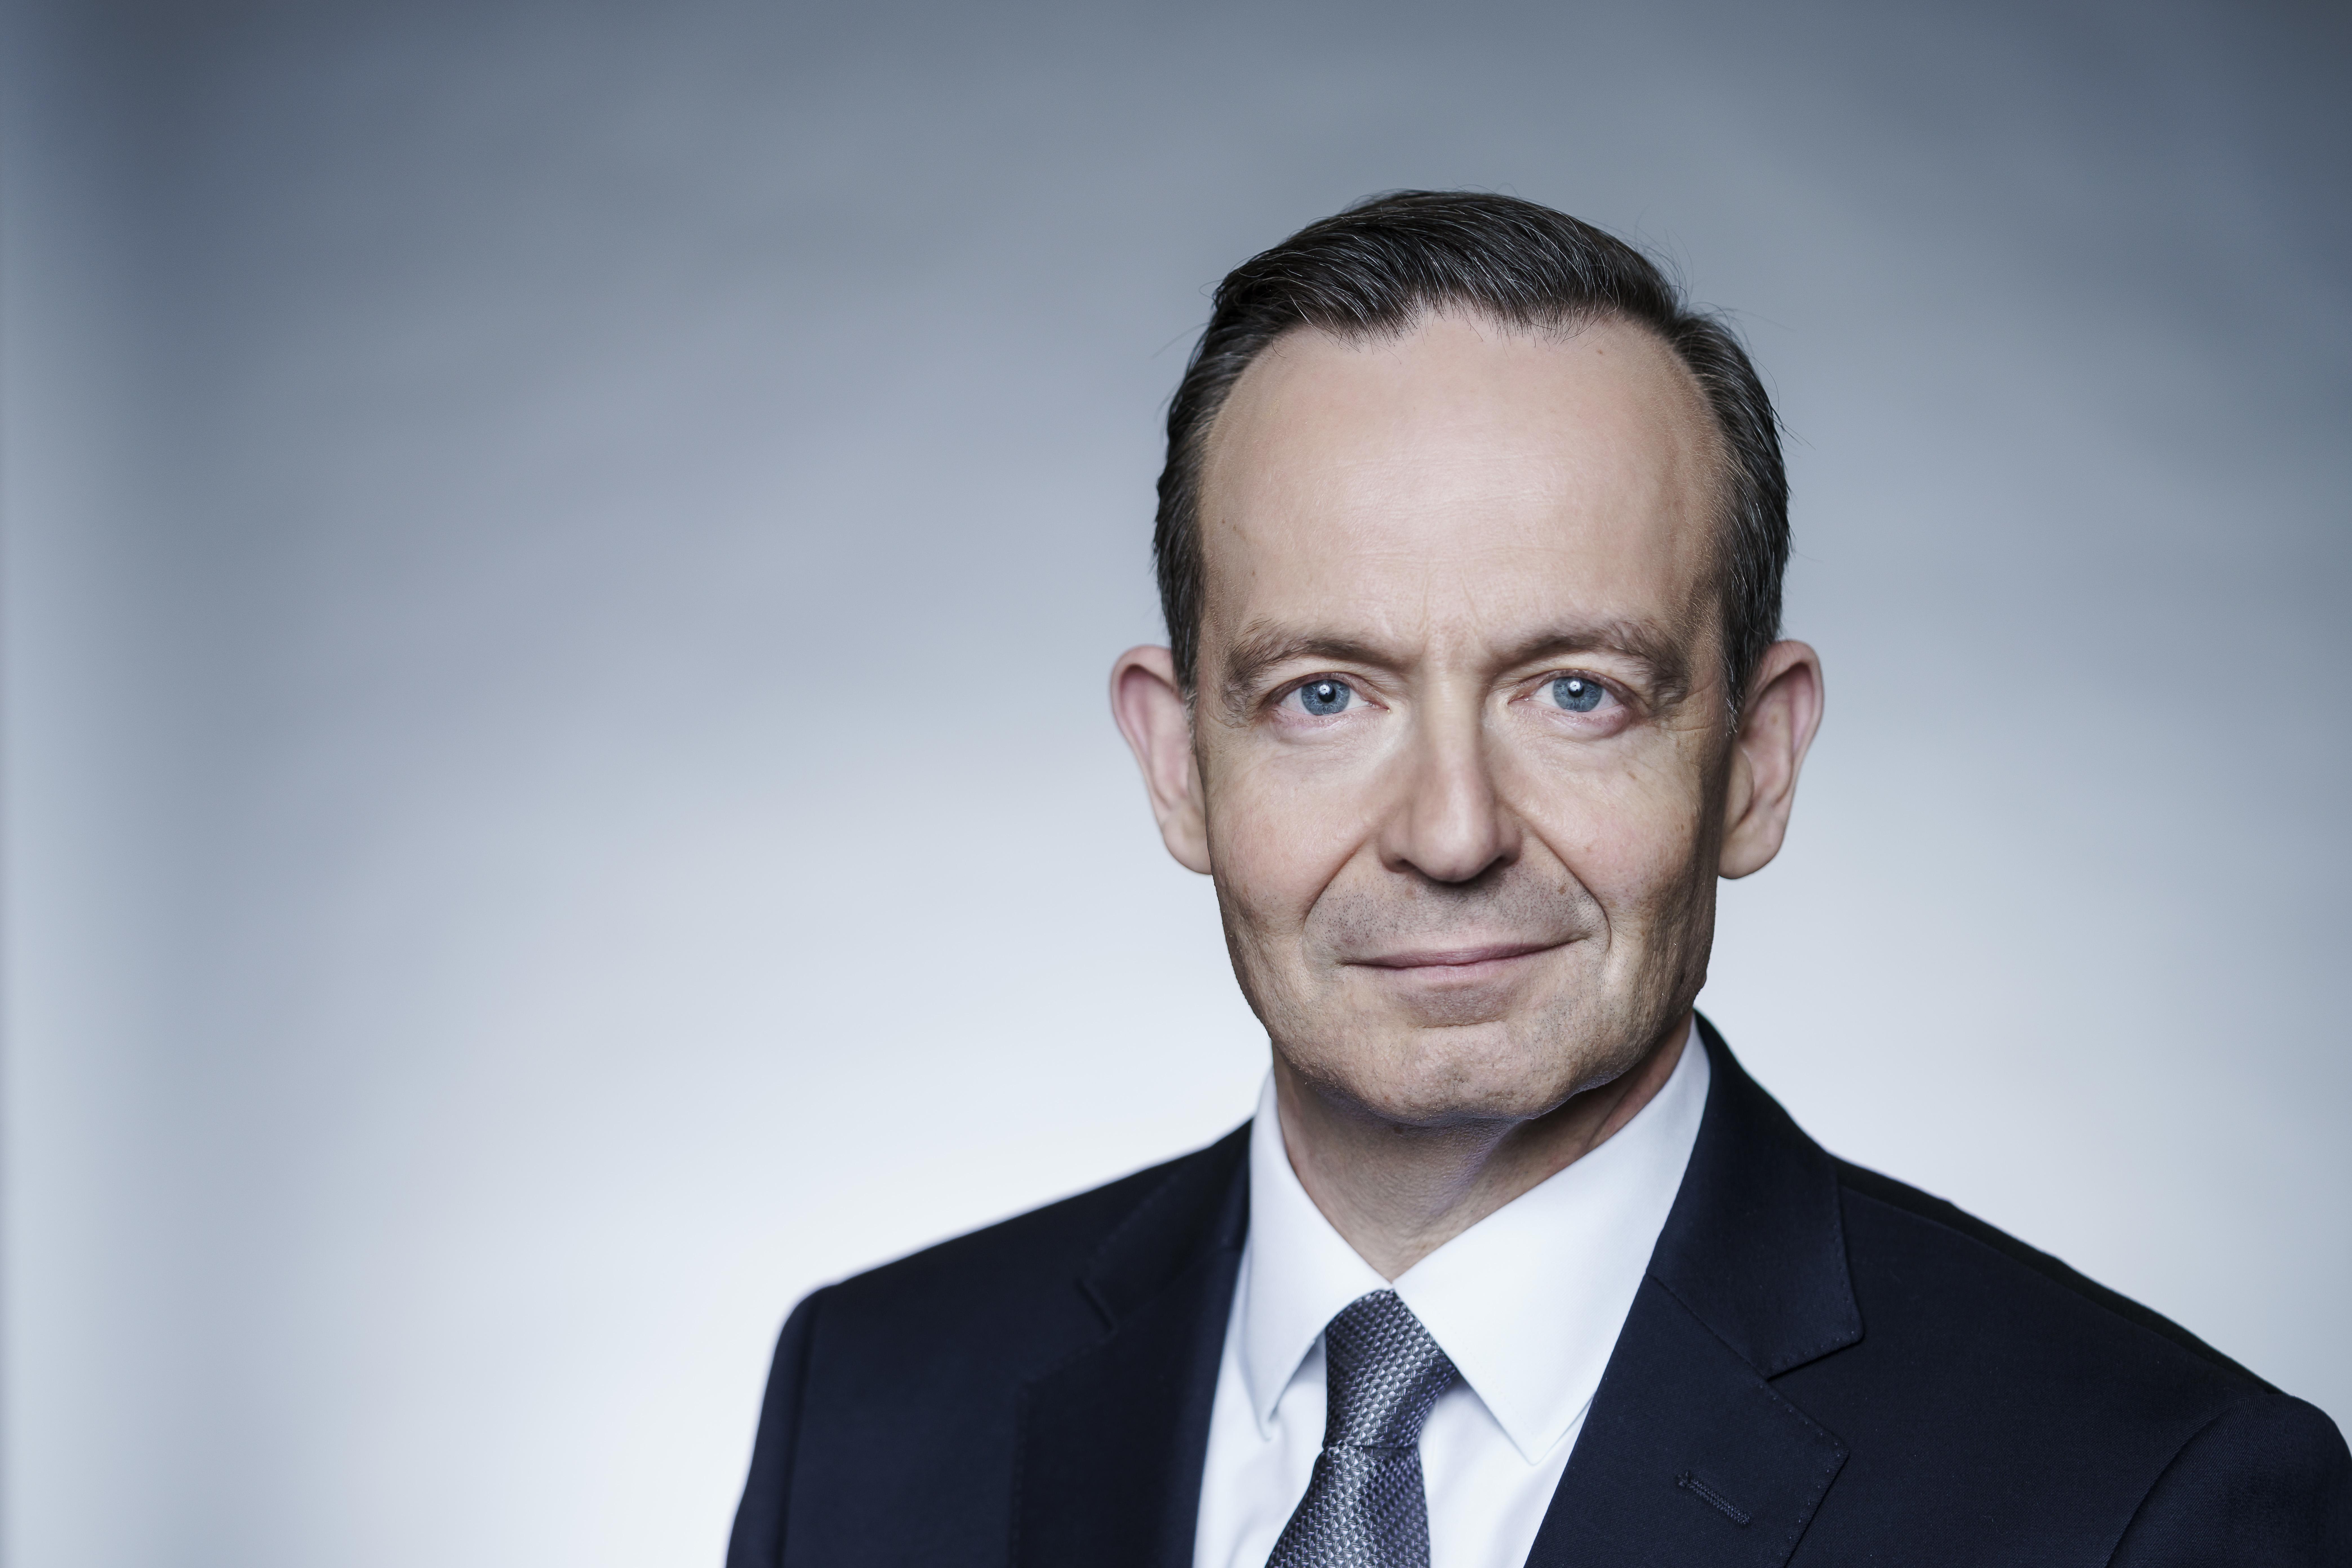 Volker Wissing, Bundesminister für Digitales und Verkehr (BMDV). Portrait